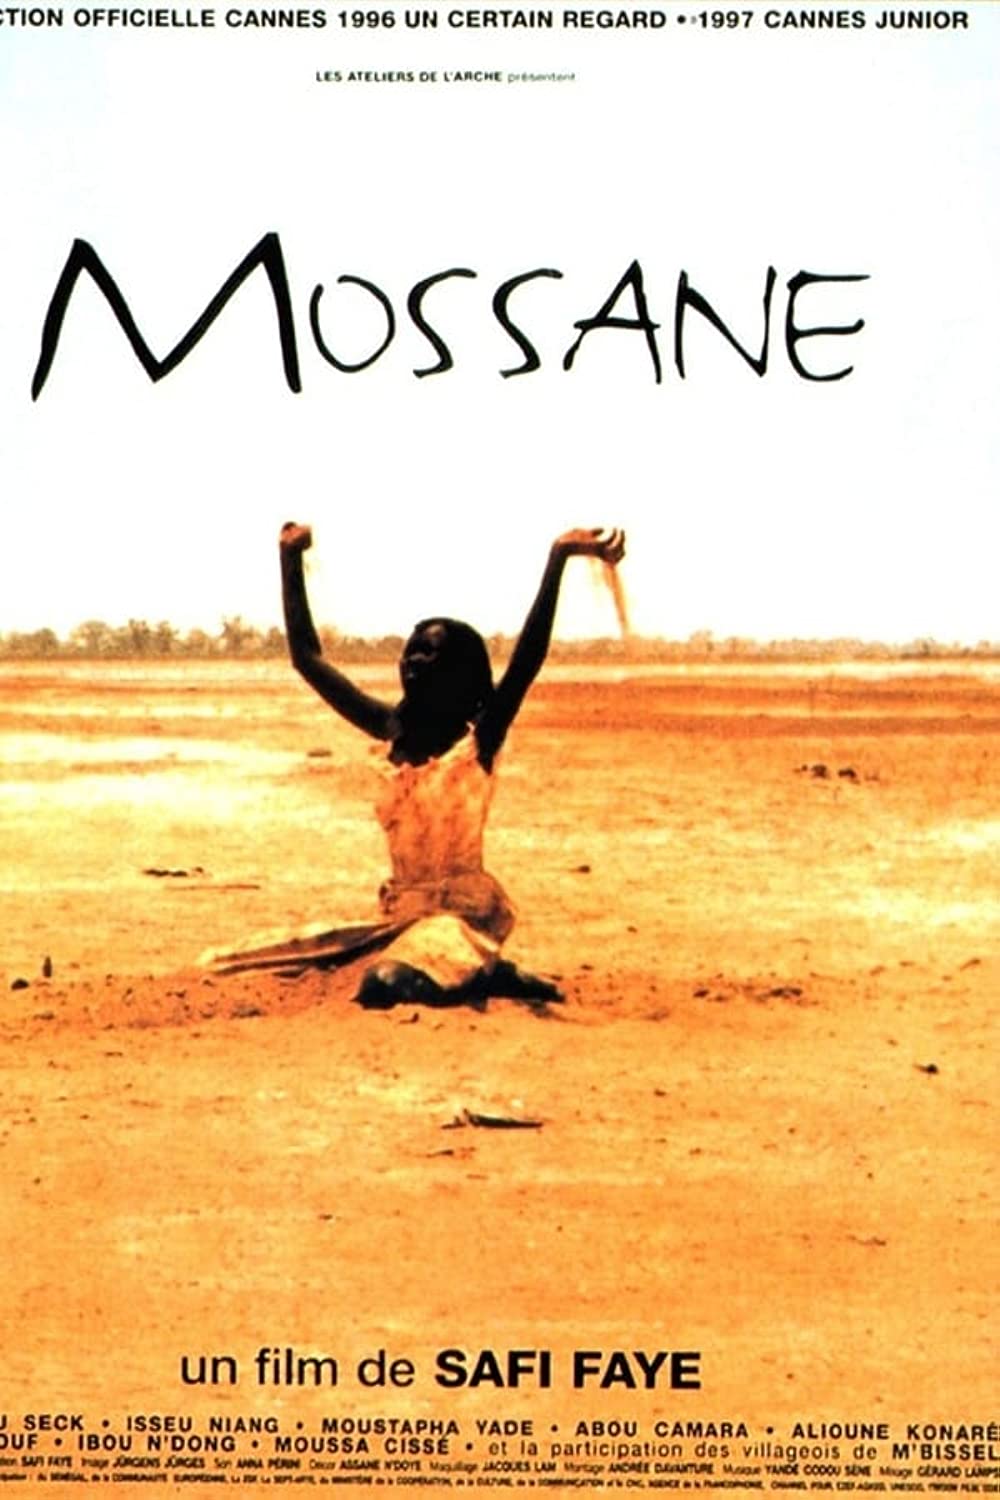 Filmbeschreibung zu Mossane (OV)